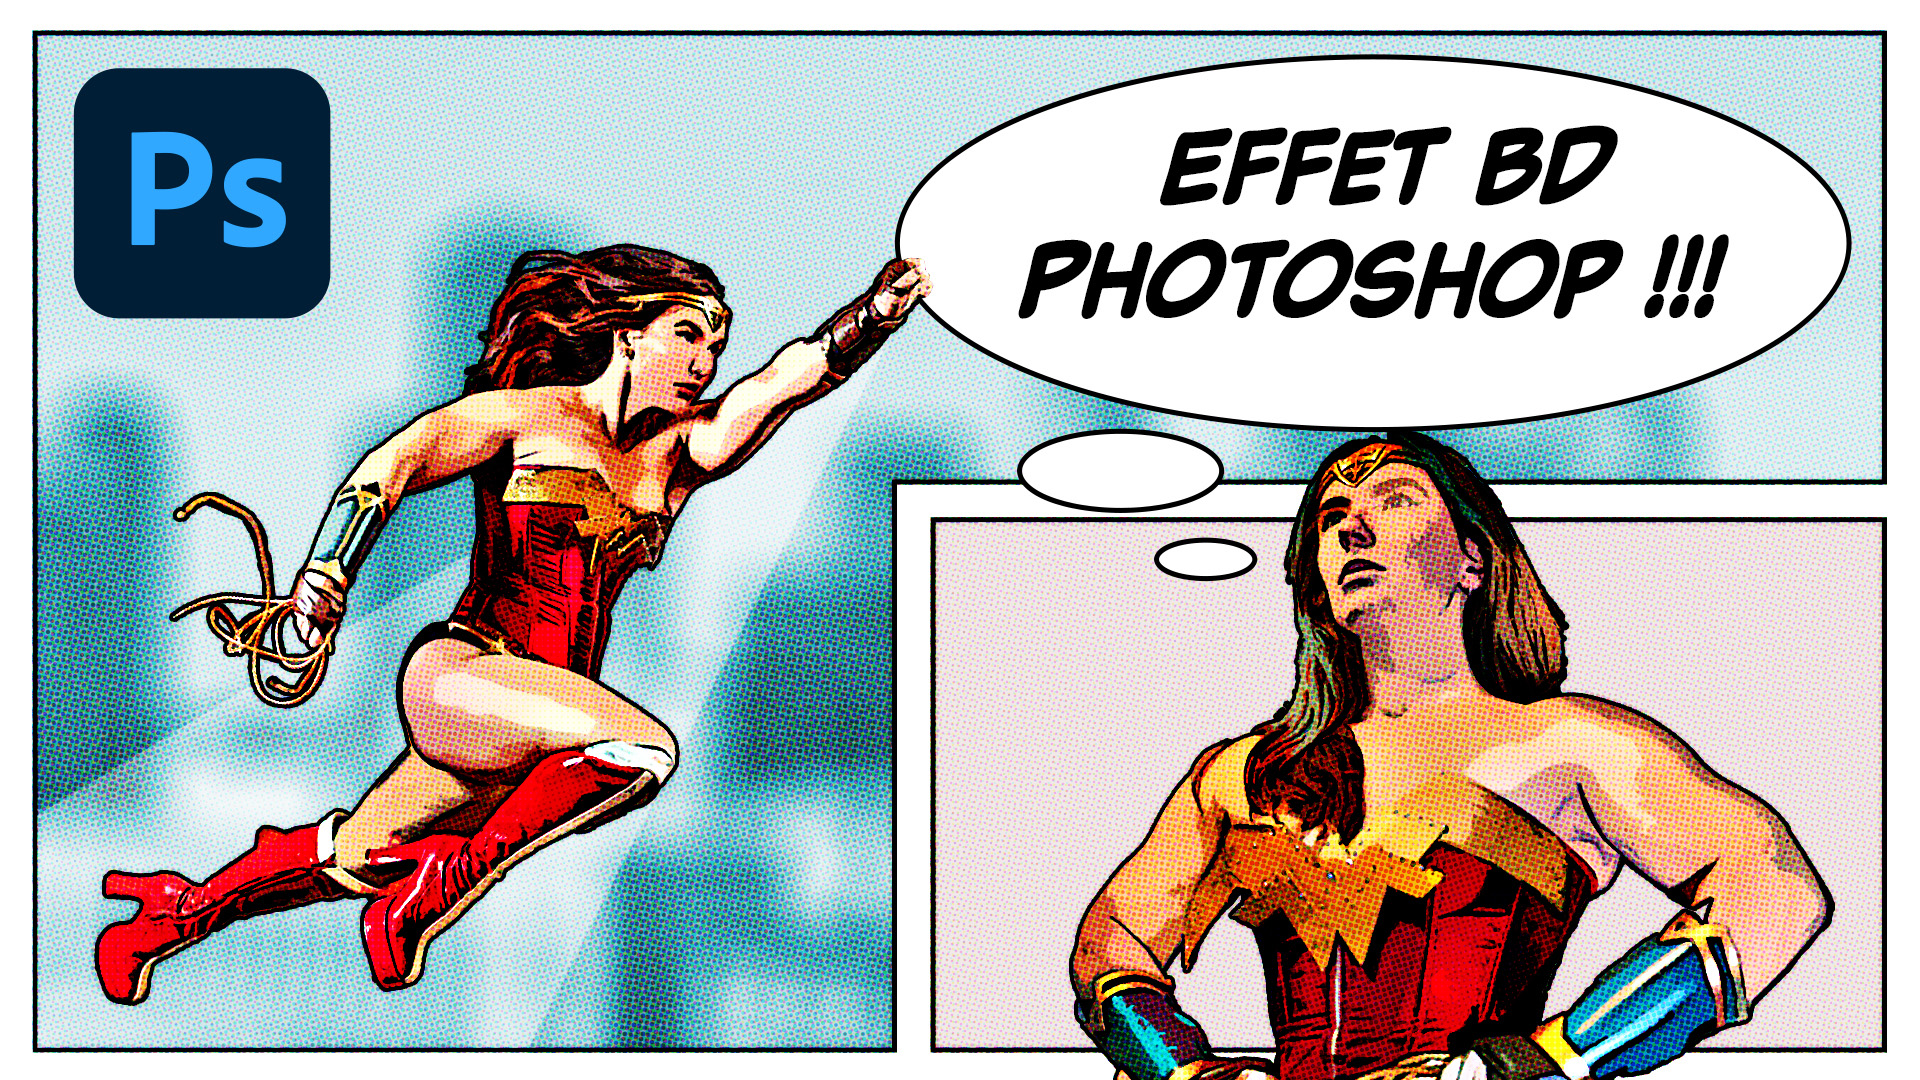 Dans ce tuto Photoshop je vous propose de voir comment faire un effet BD (comics ou cartoon) à partir d'une photo.